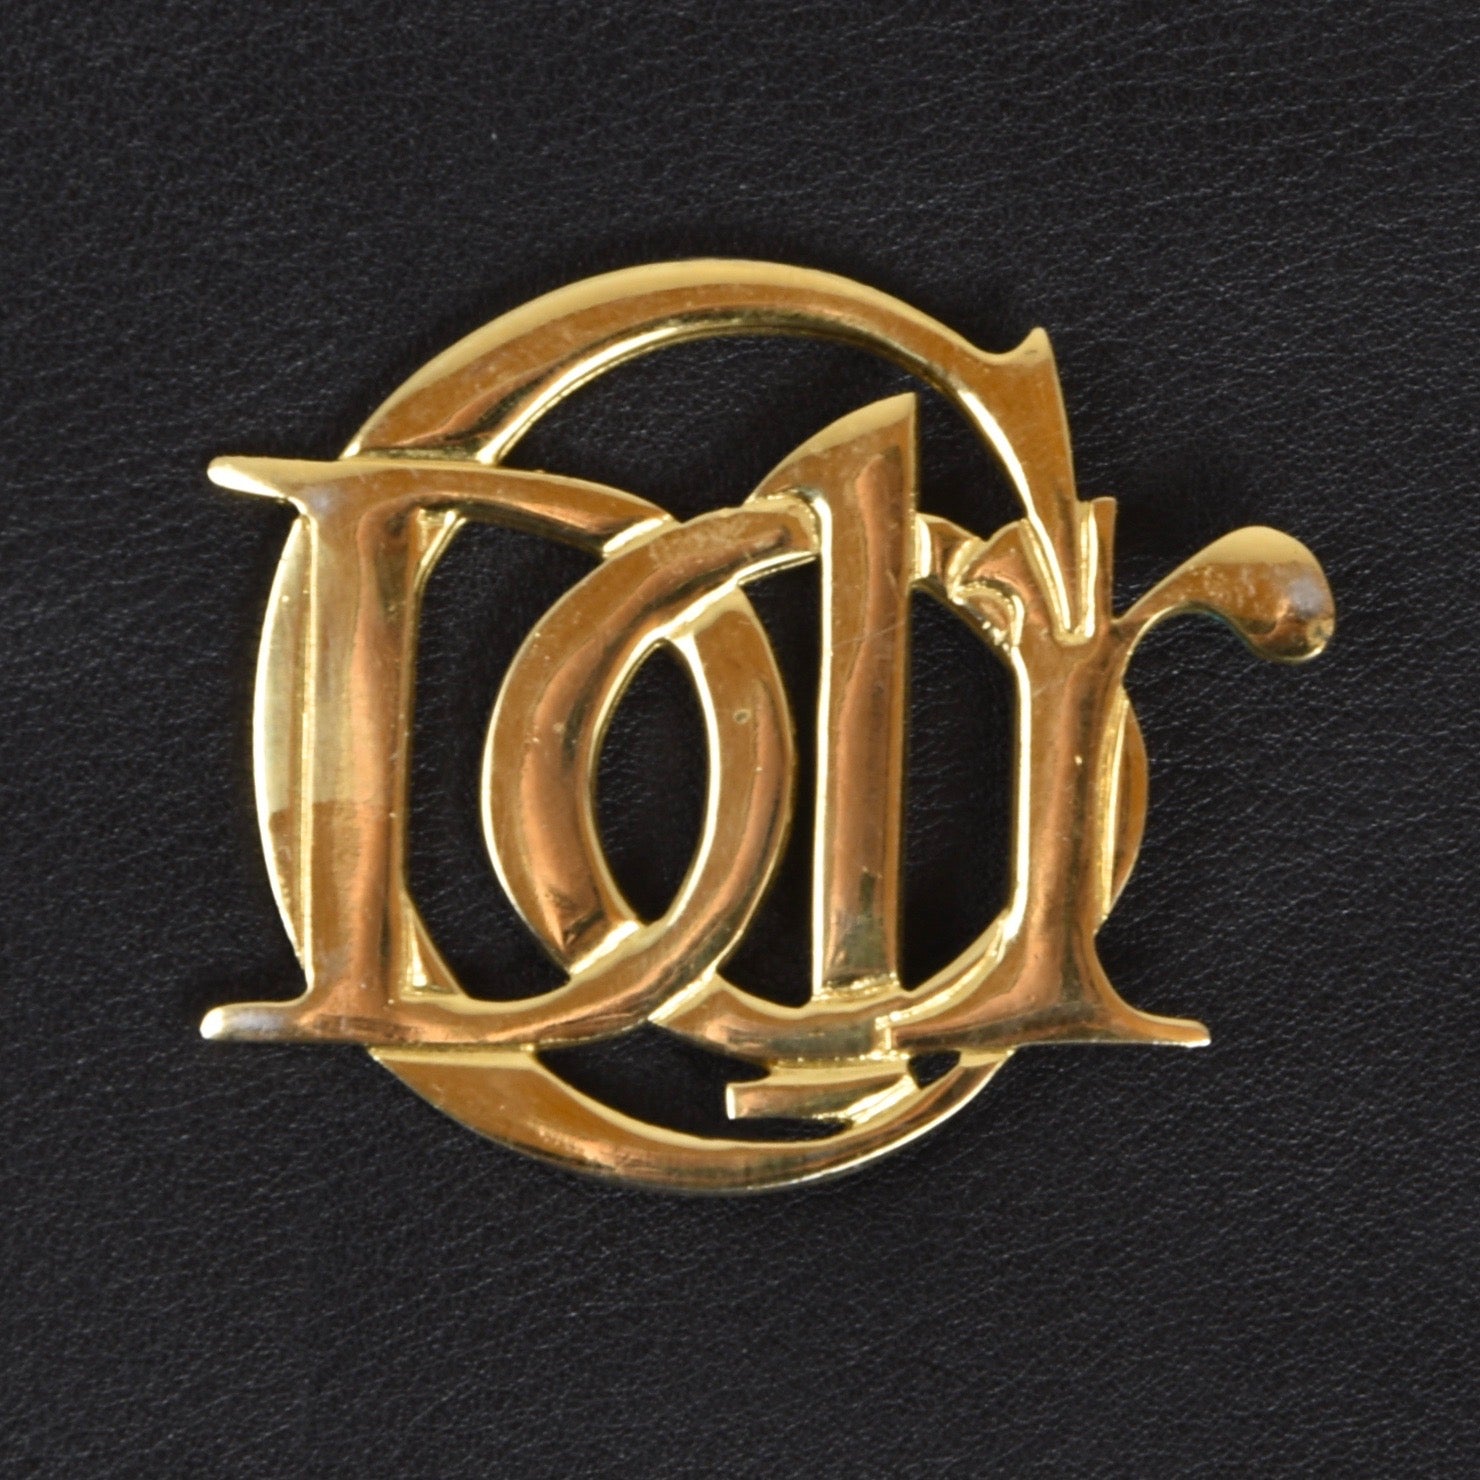 Vintage Christian Dior Parfums Brooch - Gold – Leot James